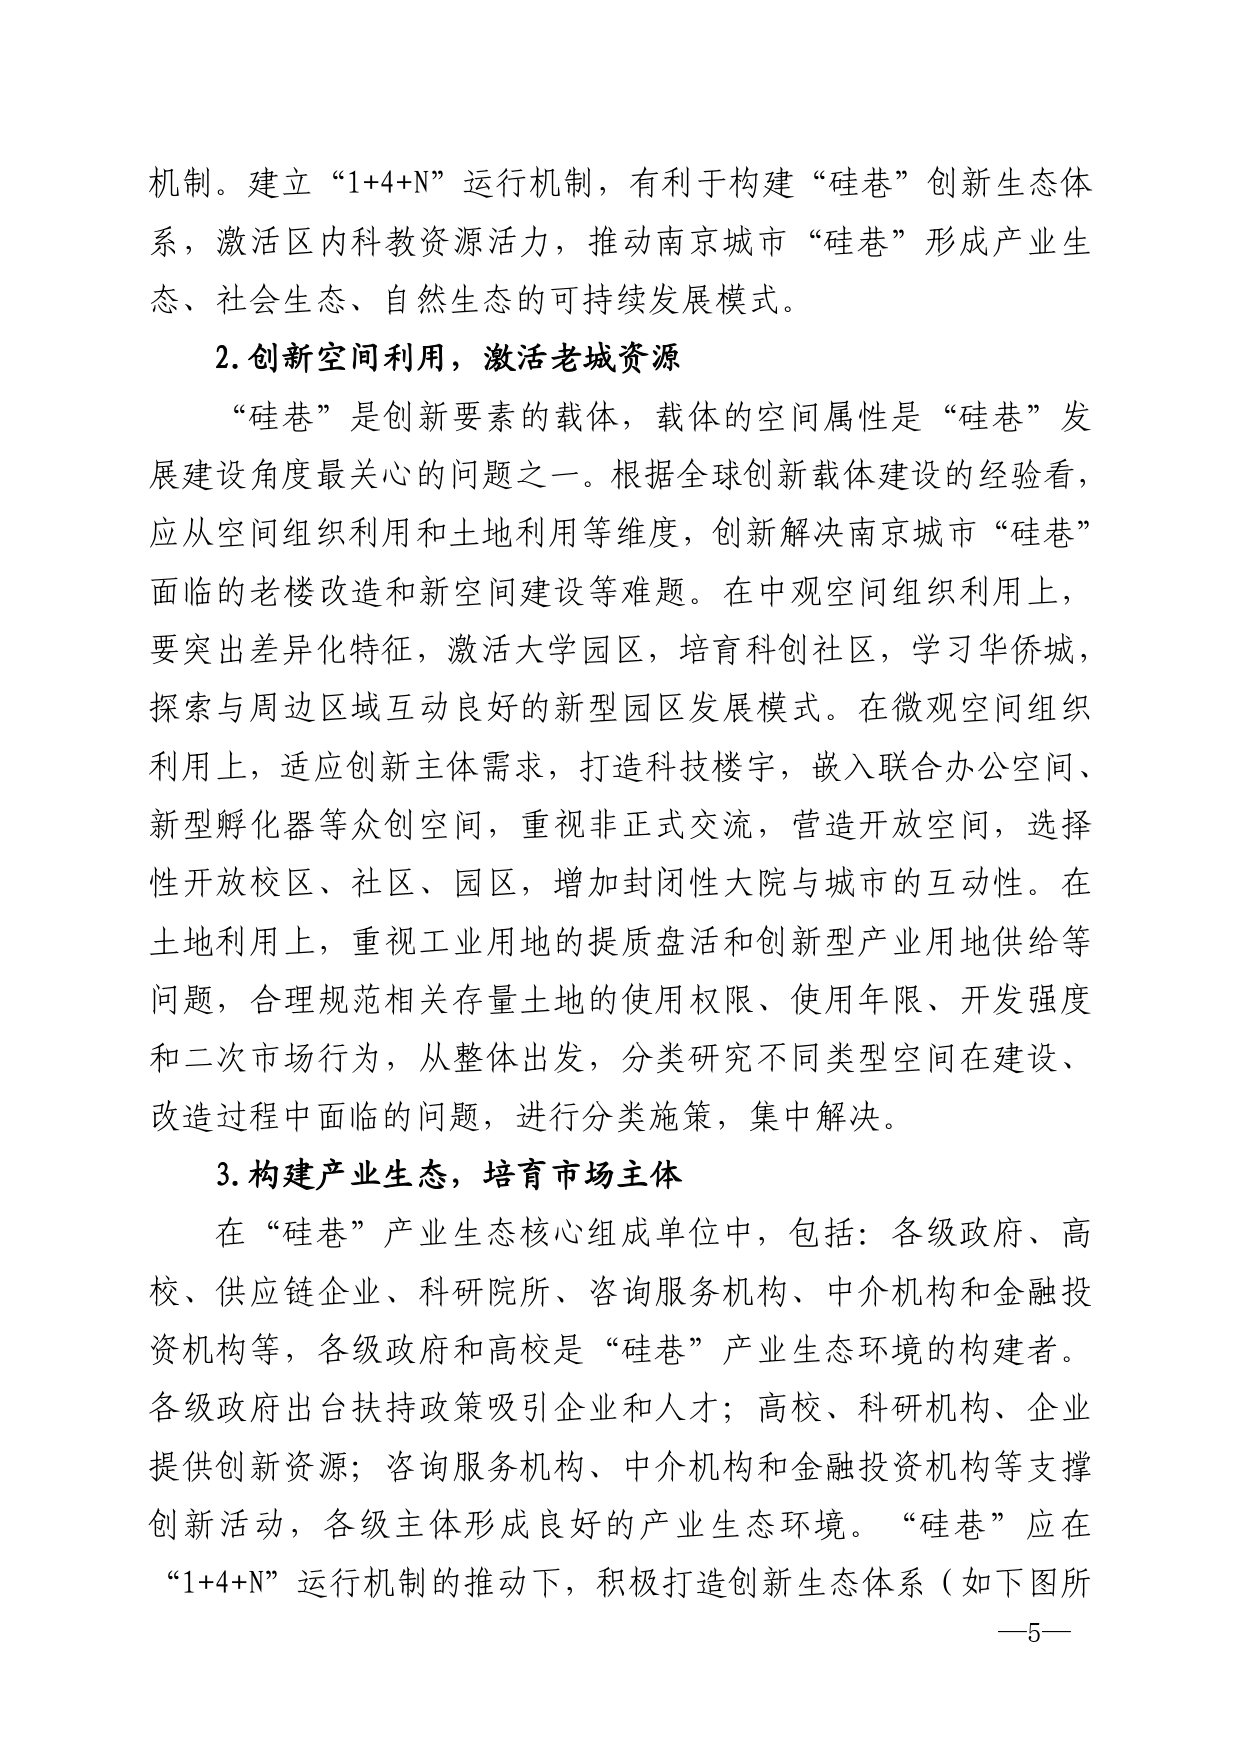 2021年第6期（关于南京城市硅巷发展的若干建议）-印刷版_page-0005.jpg